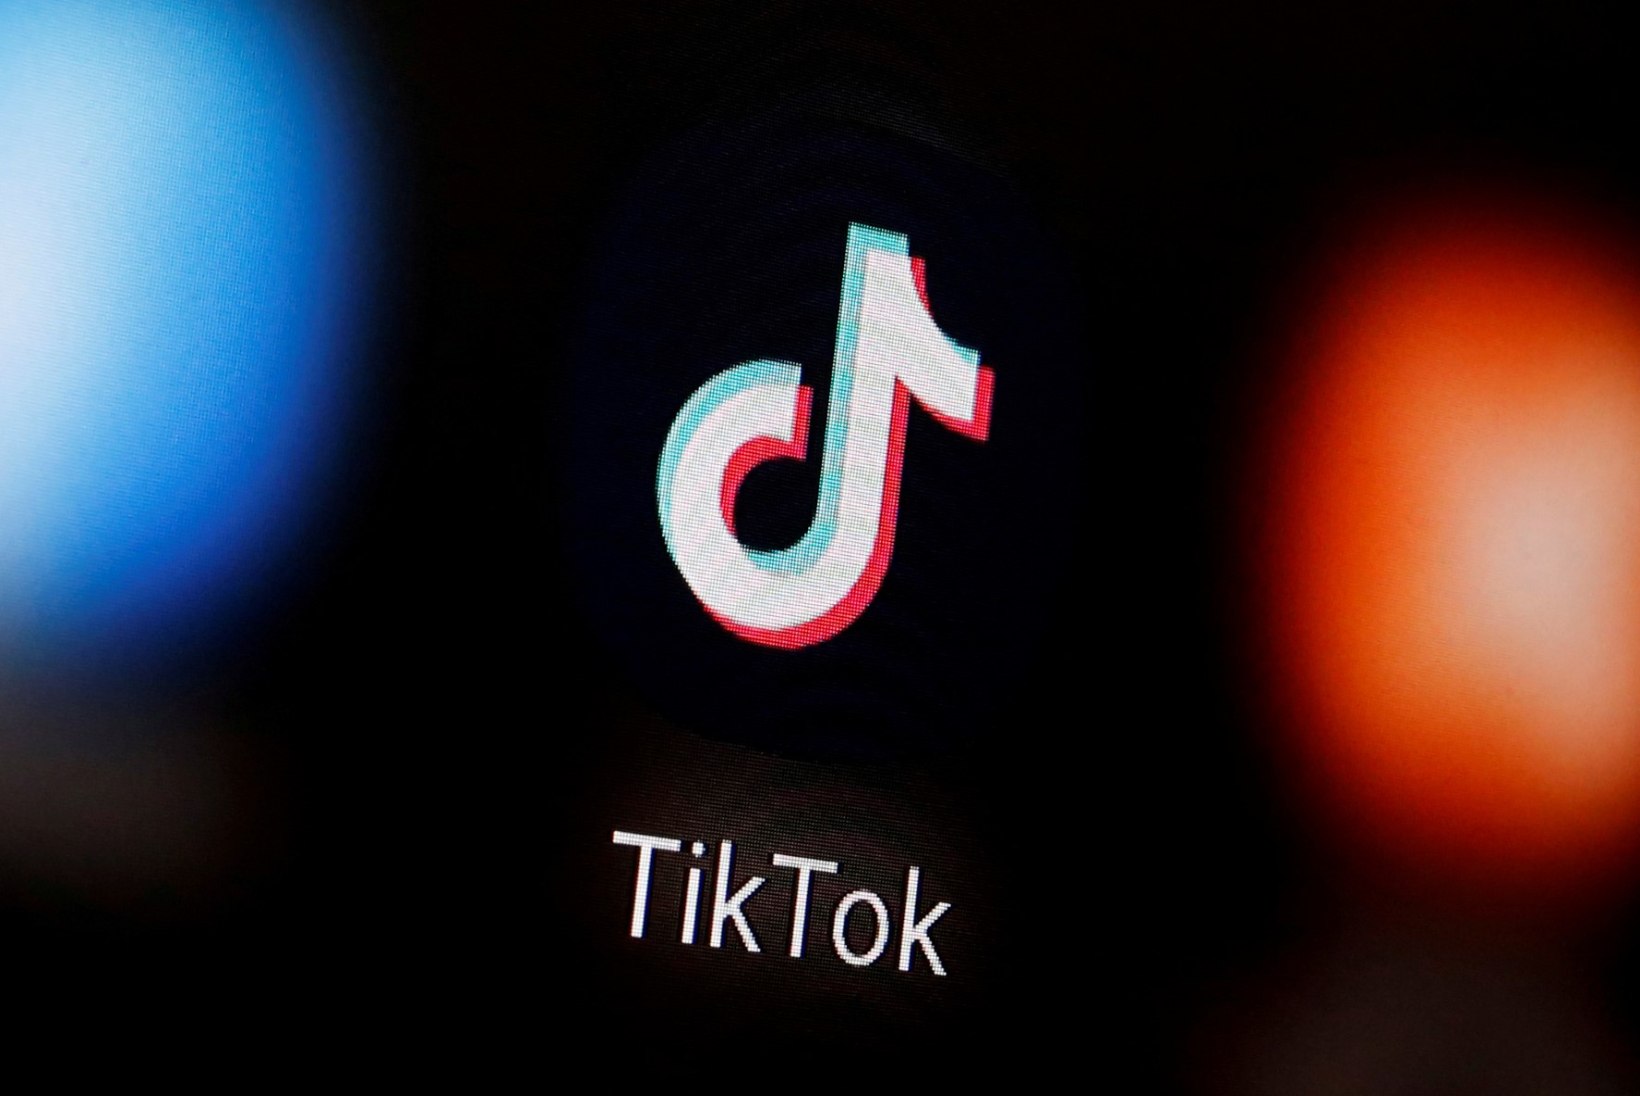 Eesti riigiasutus keelas töötelefonides TikToki: see on turvarisk!